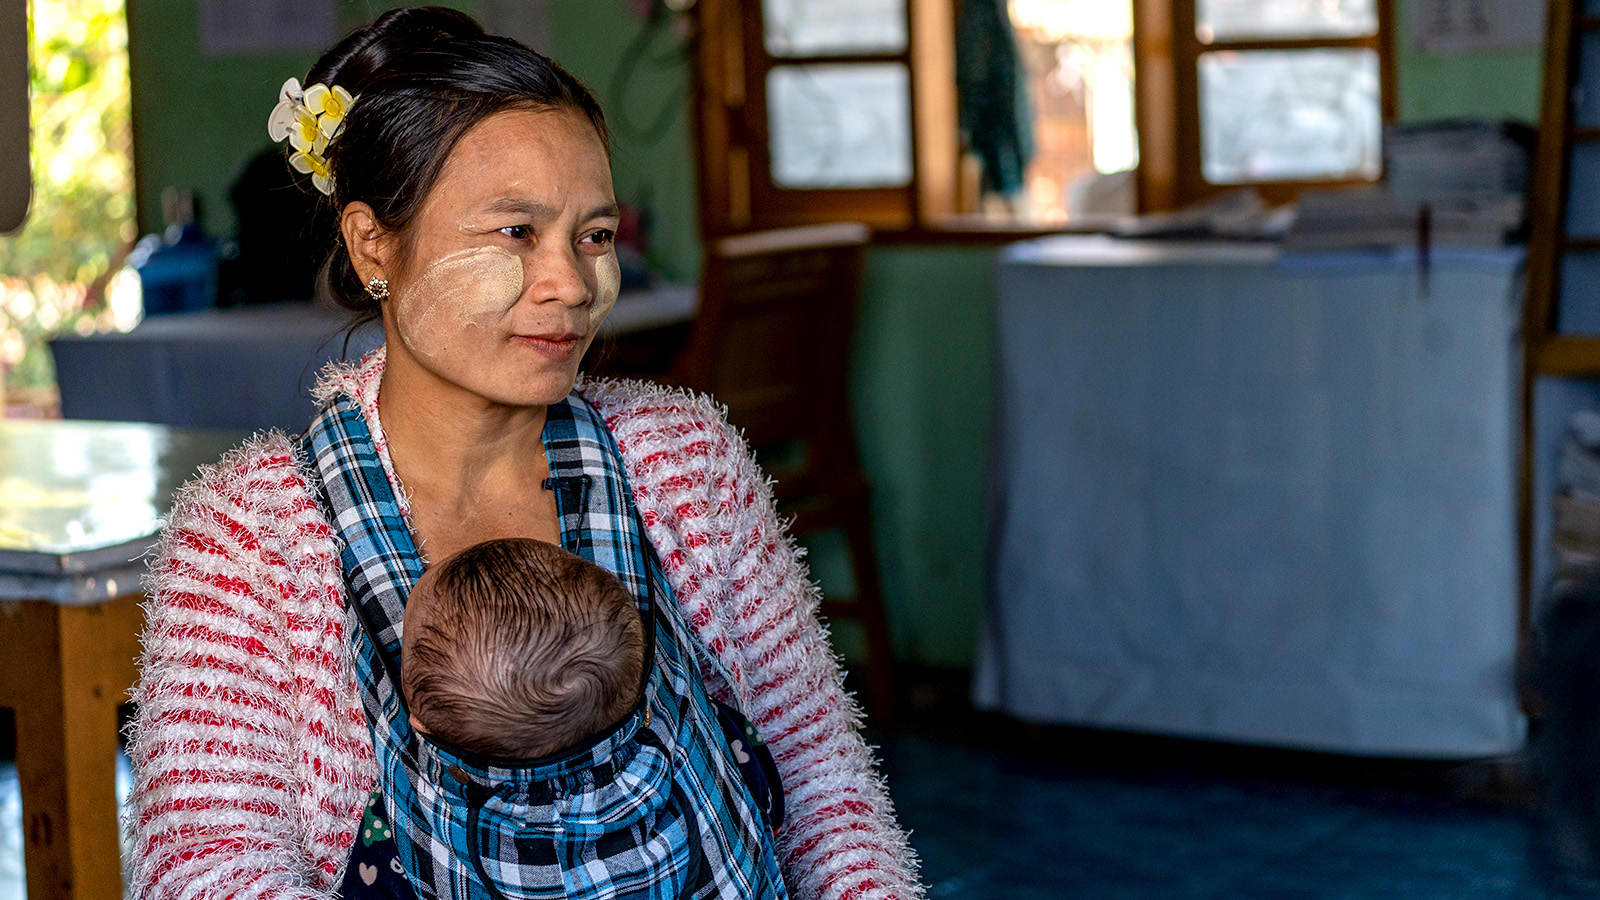 ミャンマー少数民族の妊産婦および新生児の健康改善を支援する現場へ